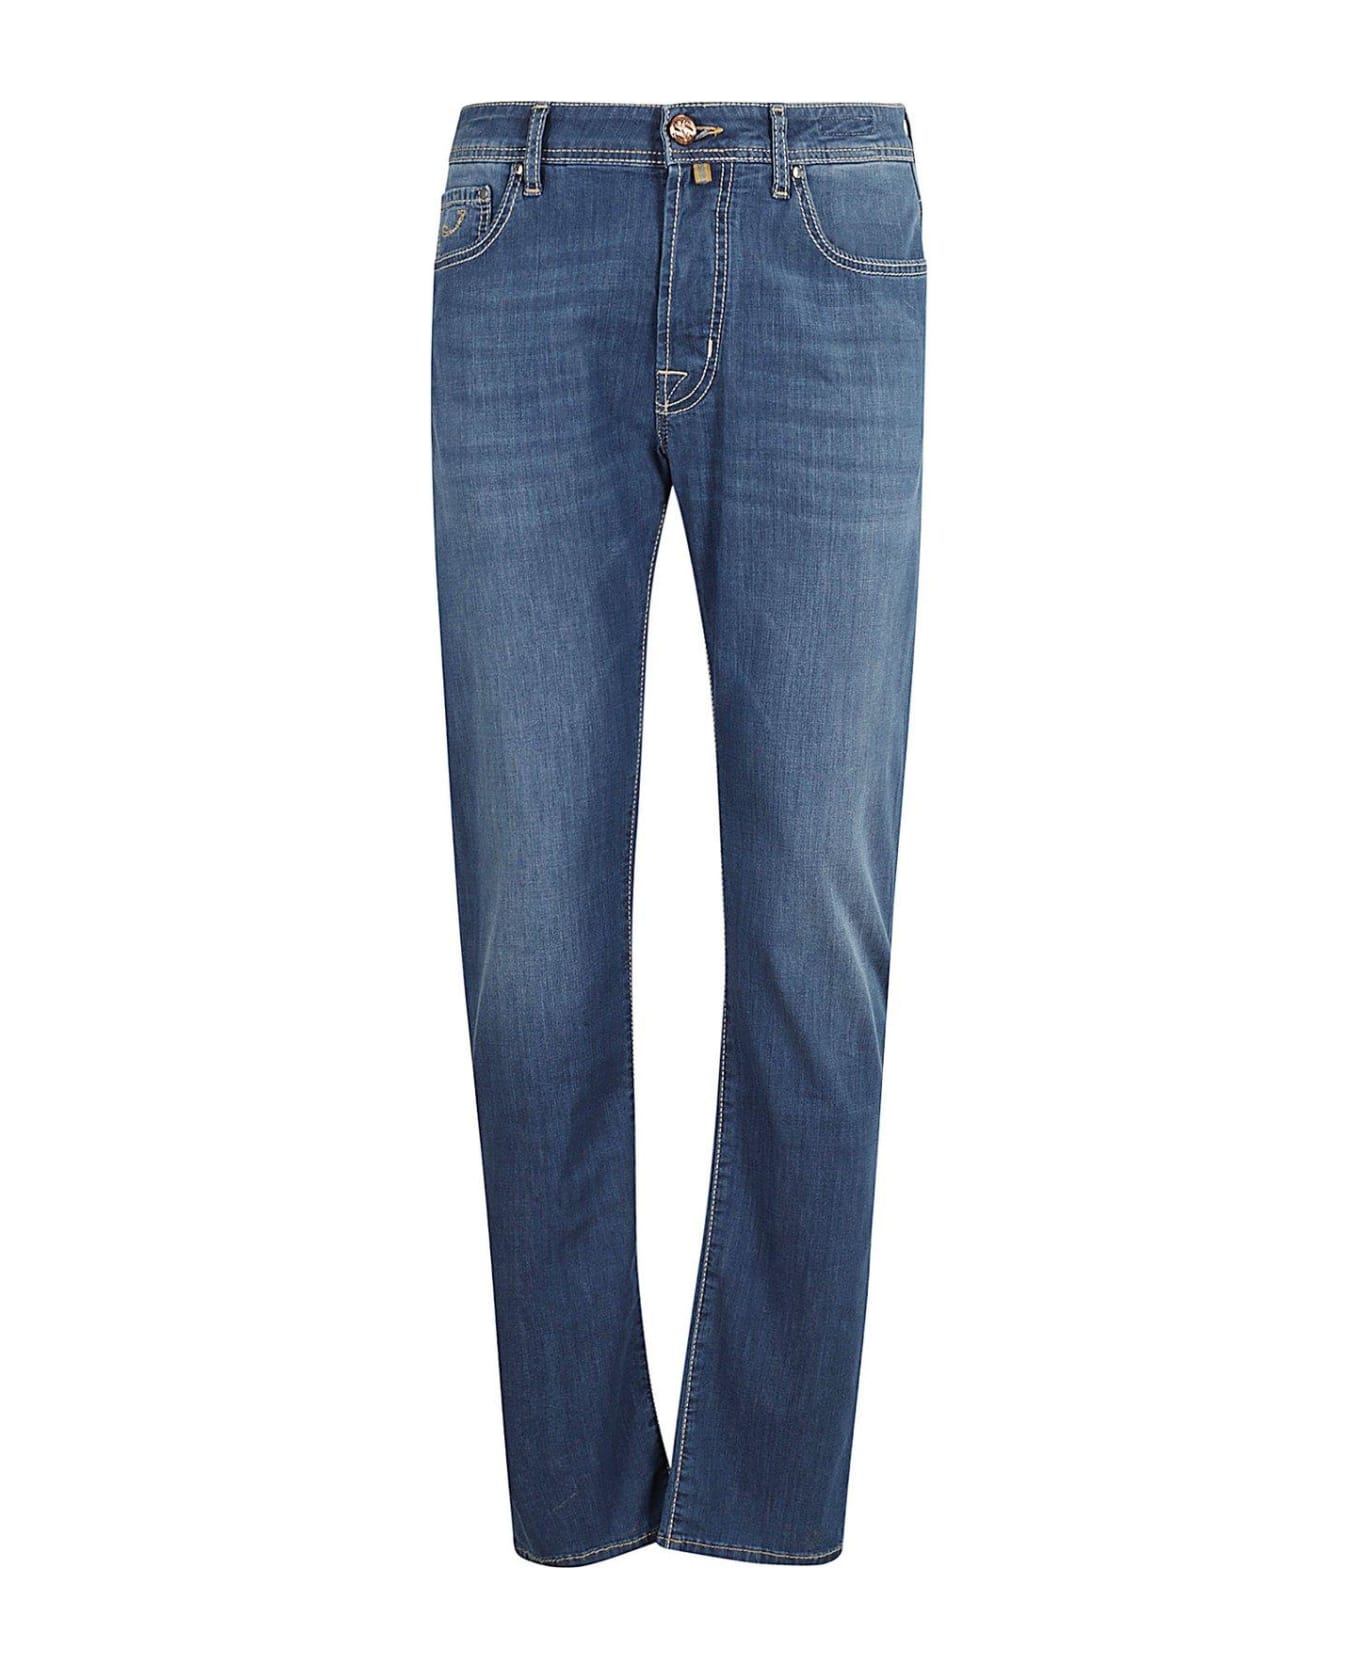 Jacob Cohen Slim Fit Jeans - DENIM BLUE